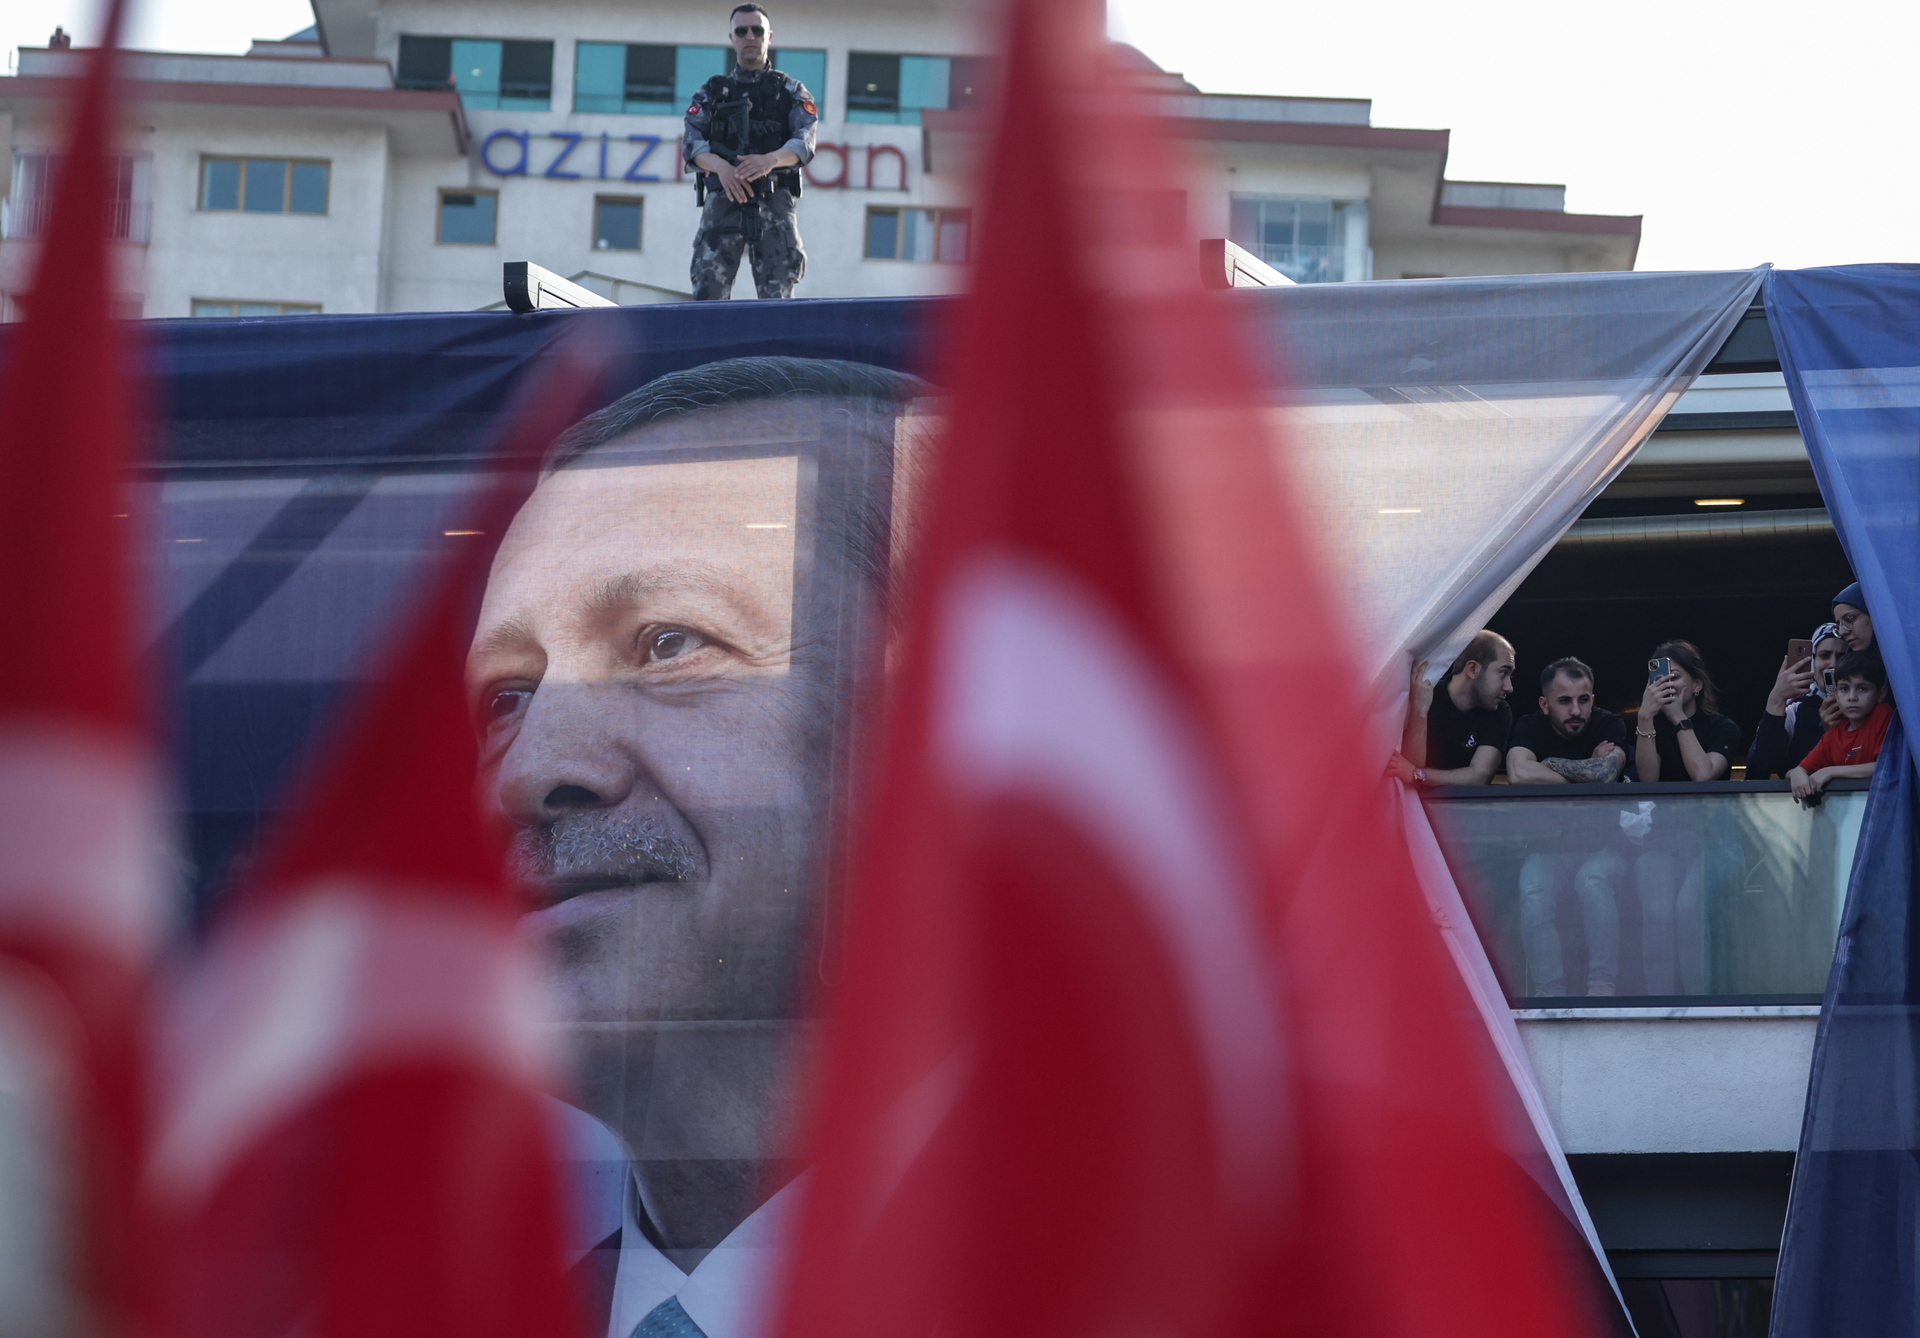 Resultados preliminares ubican a Tayyip Erdogan como el ganador de las elecciones presidenciales en Turquía. Noticias en tiempo real